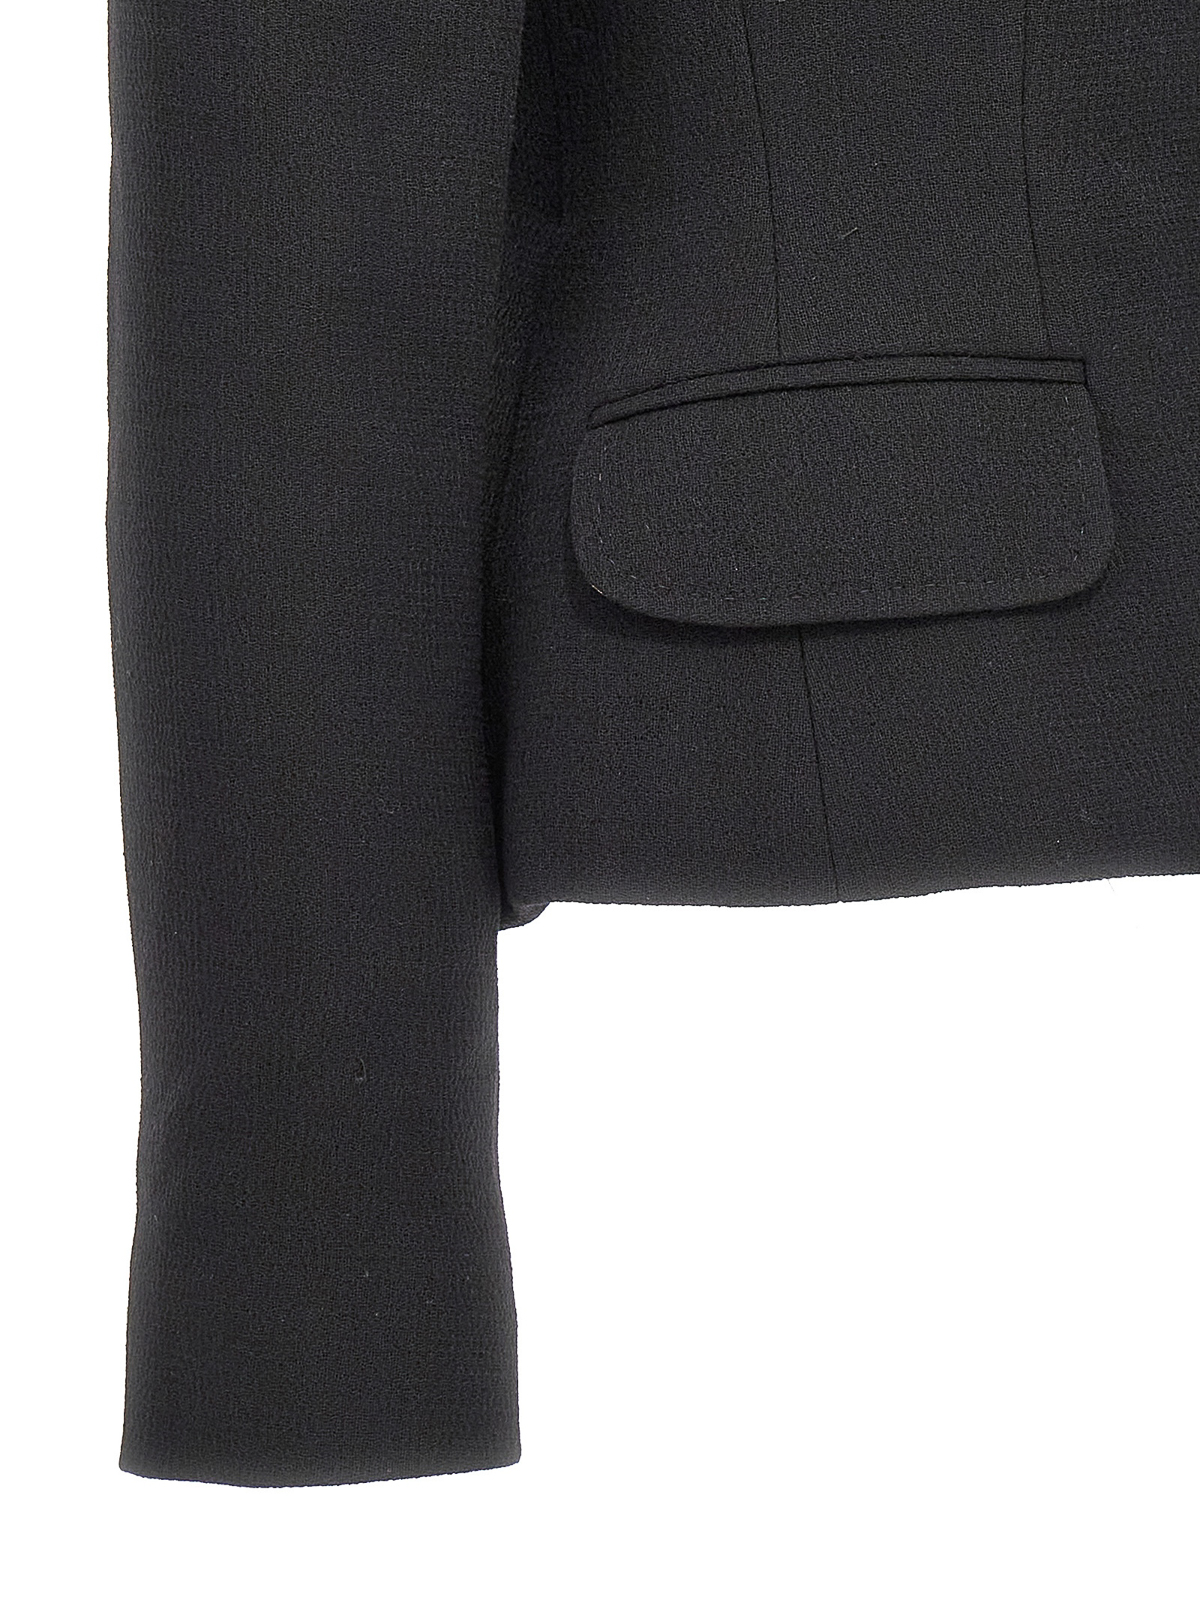 Shop Dolce & Gabbana Essential Blazer Jacket In Black